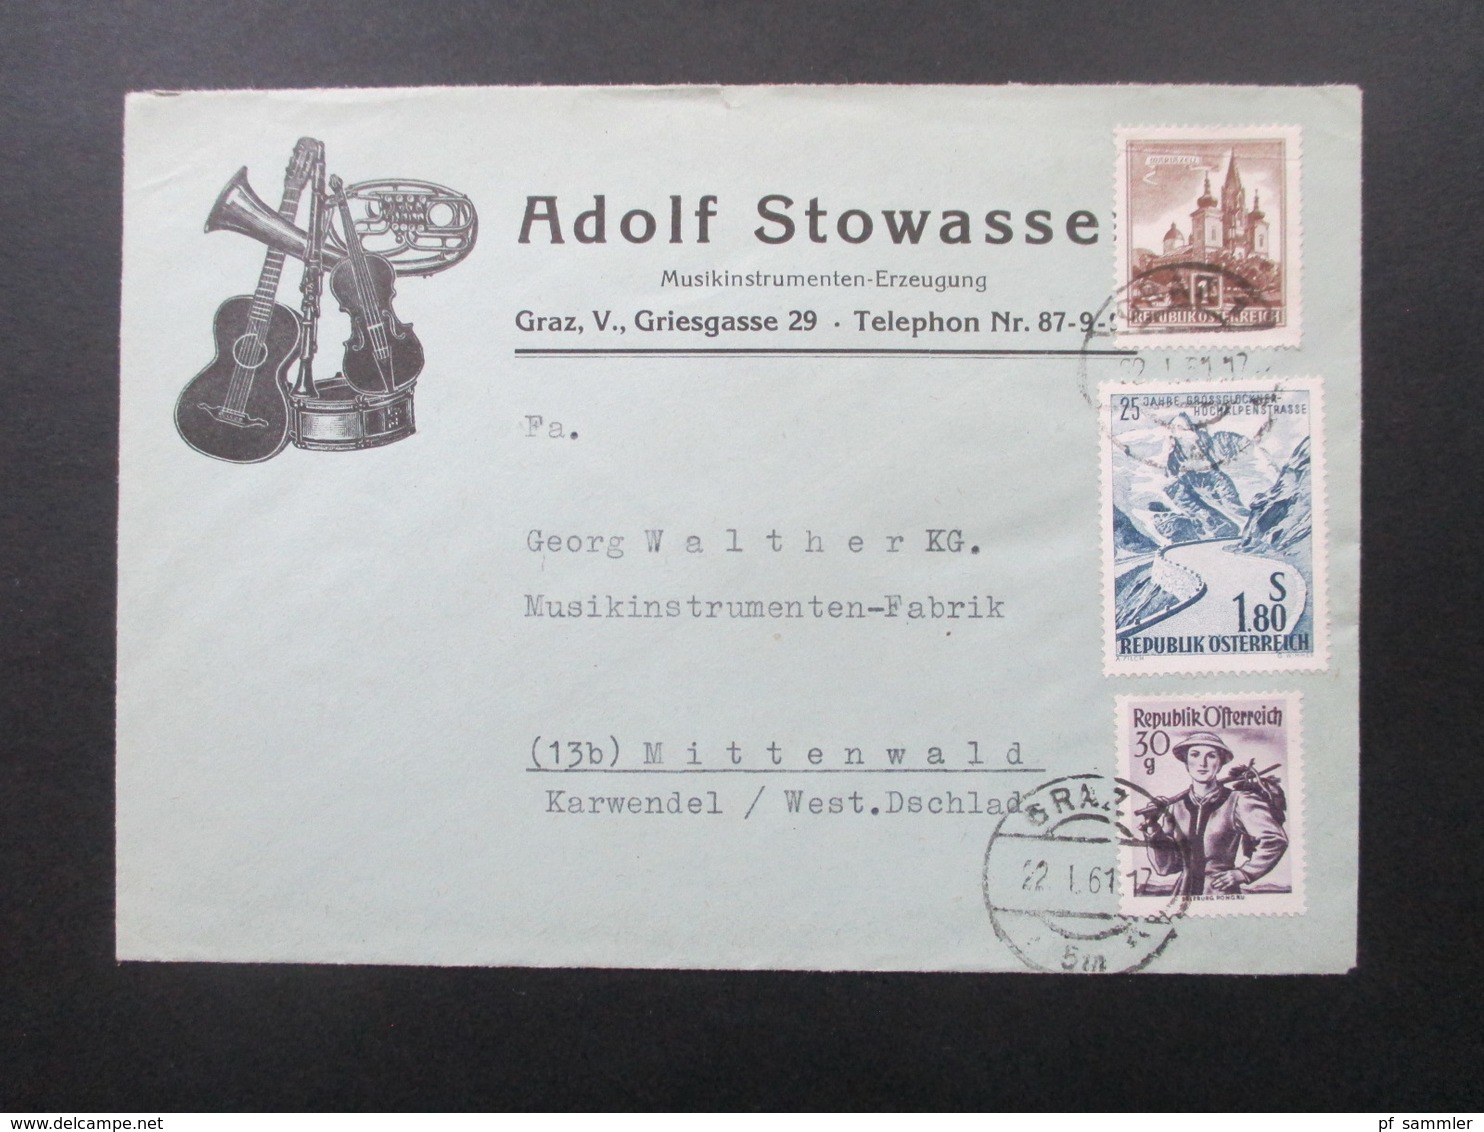 Österreich 1961 Schöner Firmenumschlag Adolf Stowasser Musikinstrumenten Erzeugung Graz. Thematik Musik / Instrumente - Briefe U. Dokumente